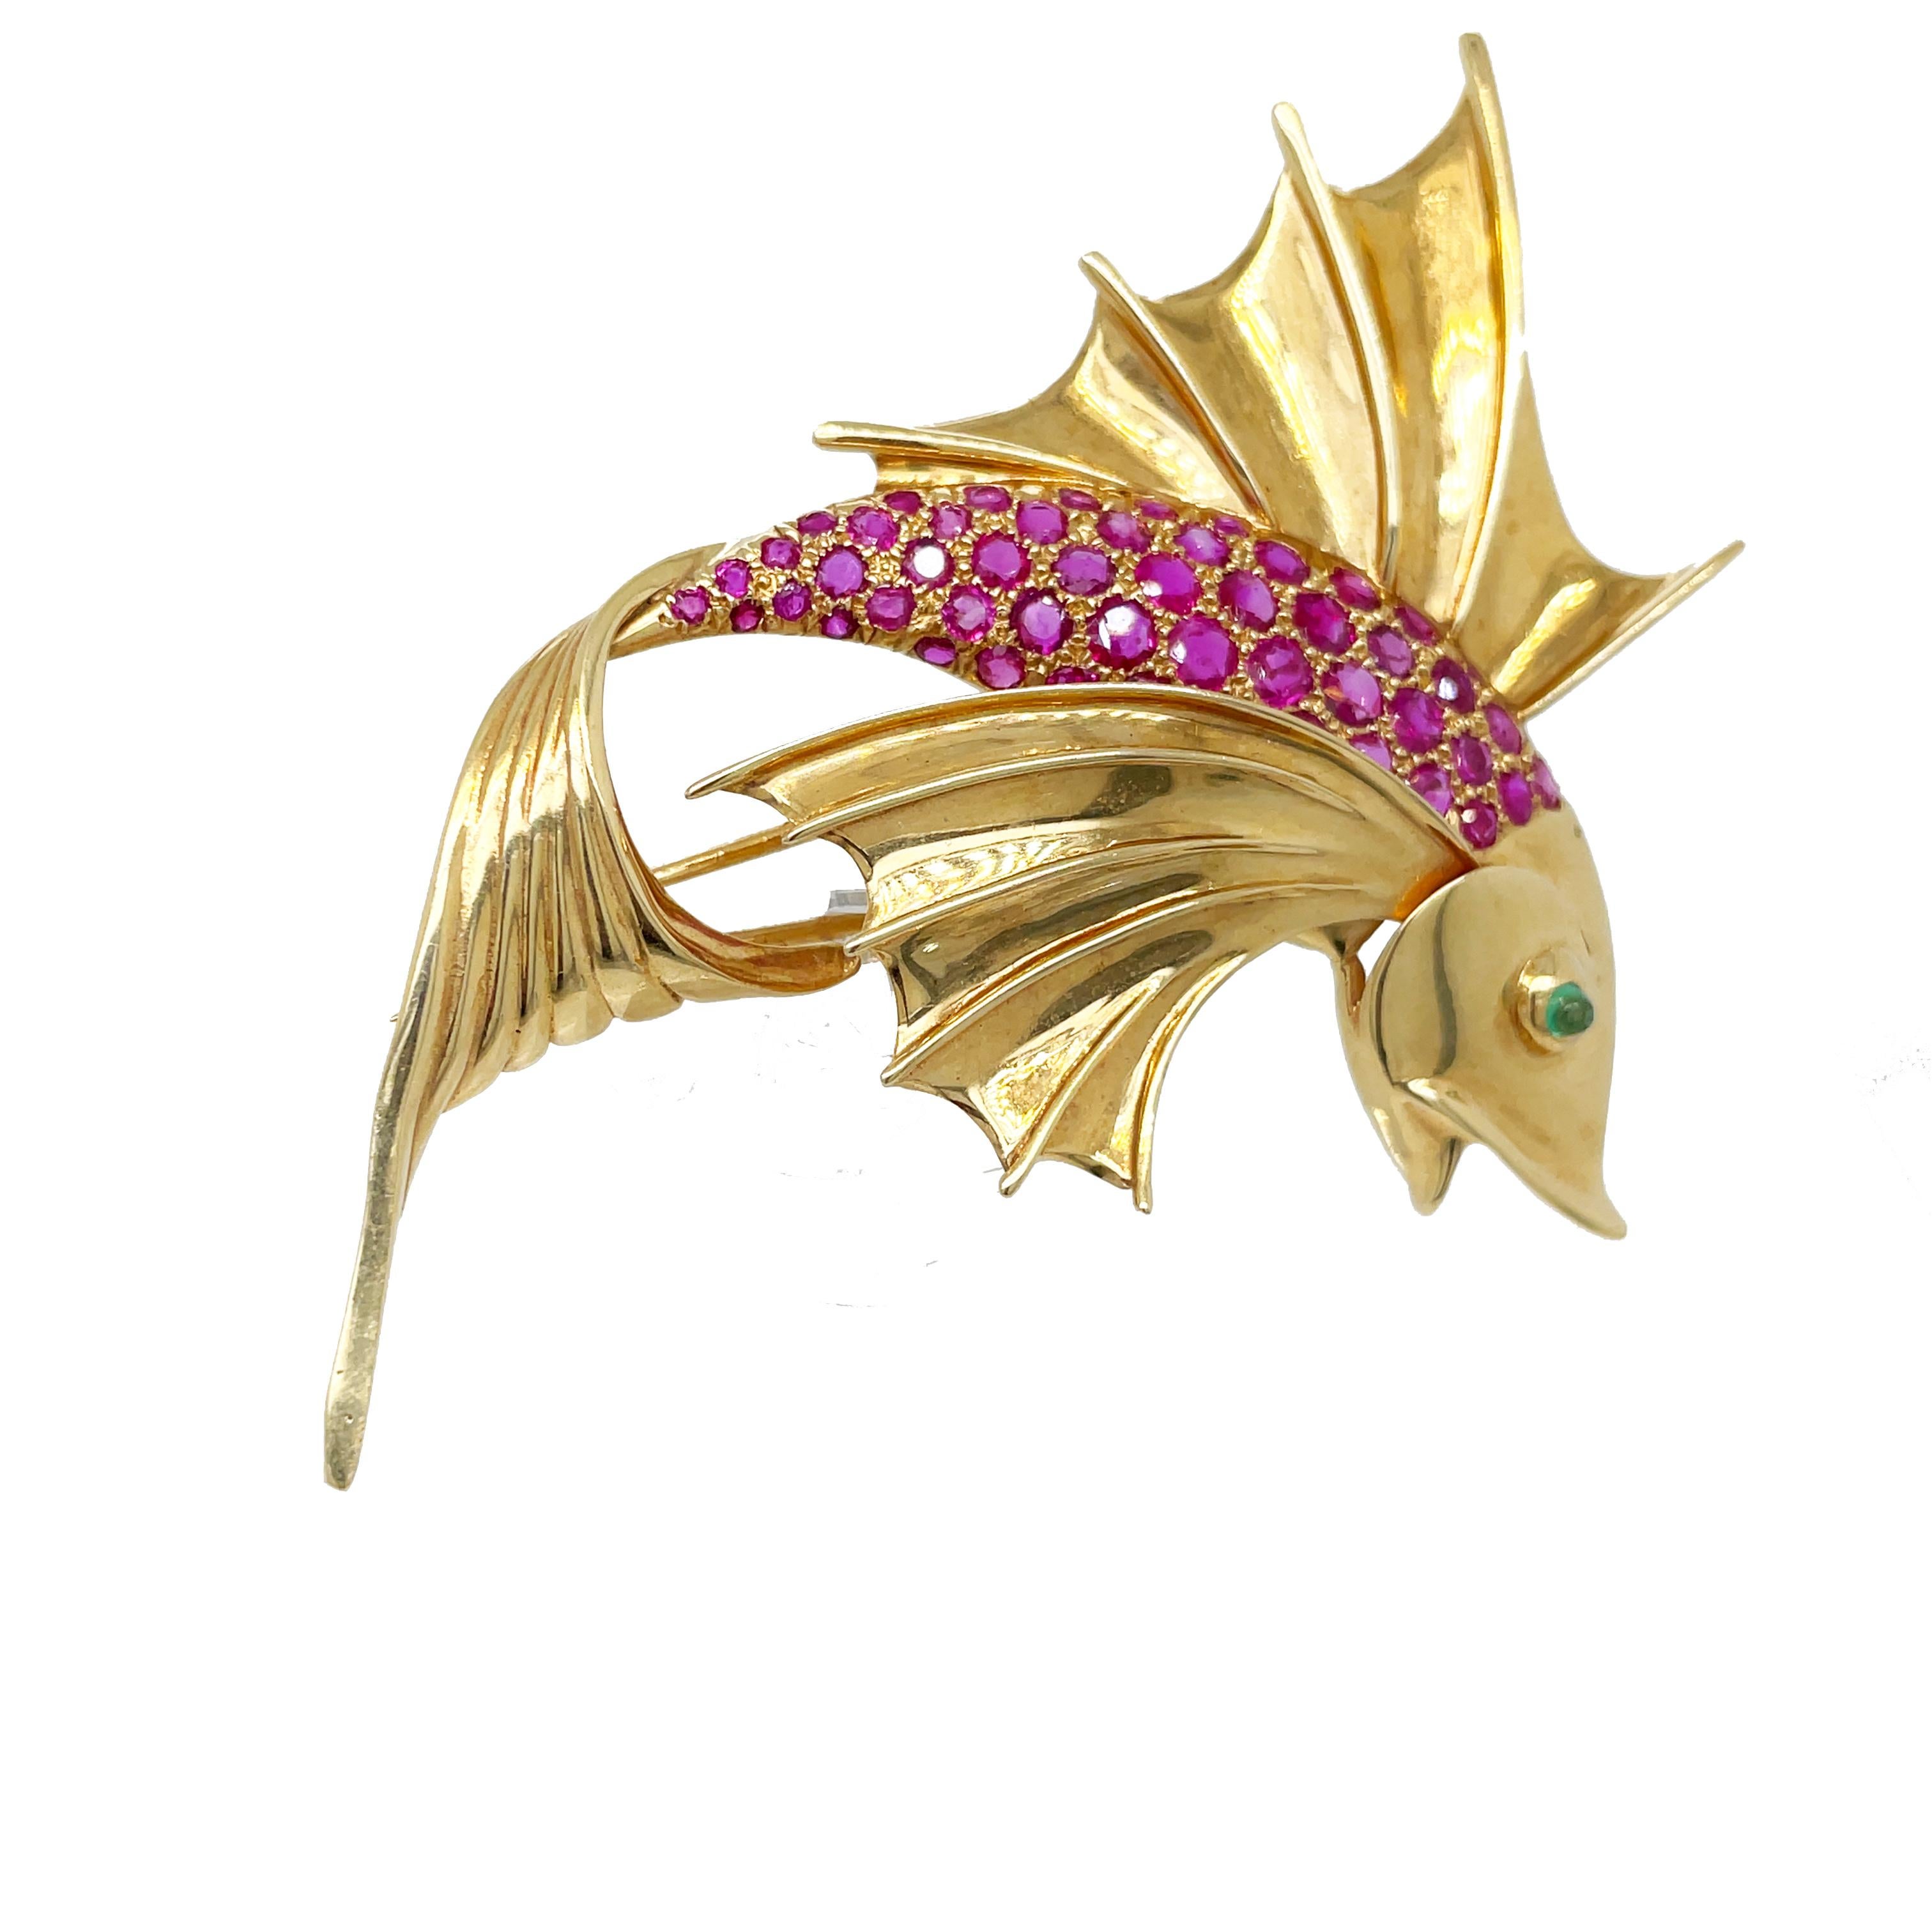 Il s'agit d'une épingle à poisson des années 1960 en or jaune 14 carats qui présente de magnifiques rubis éblouissants sur le corps et un œil en émeraude. Les détails complexes et le savoir-faire de cette broche sont vraiment extraordinaires. Avec